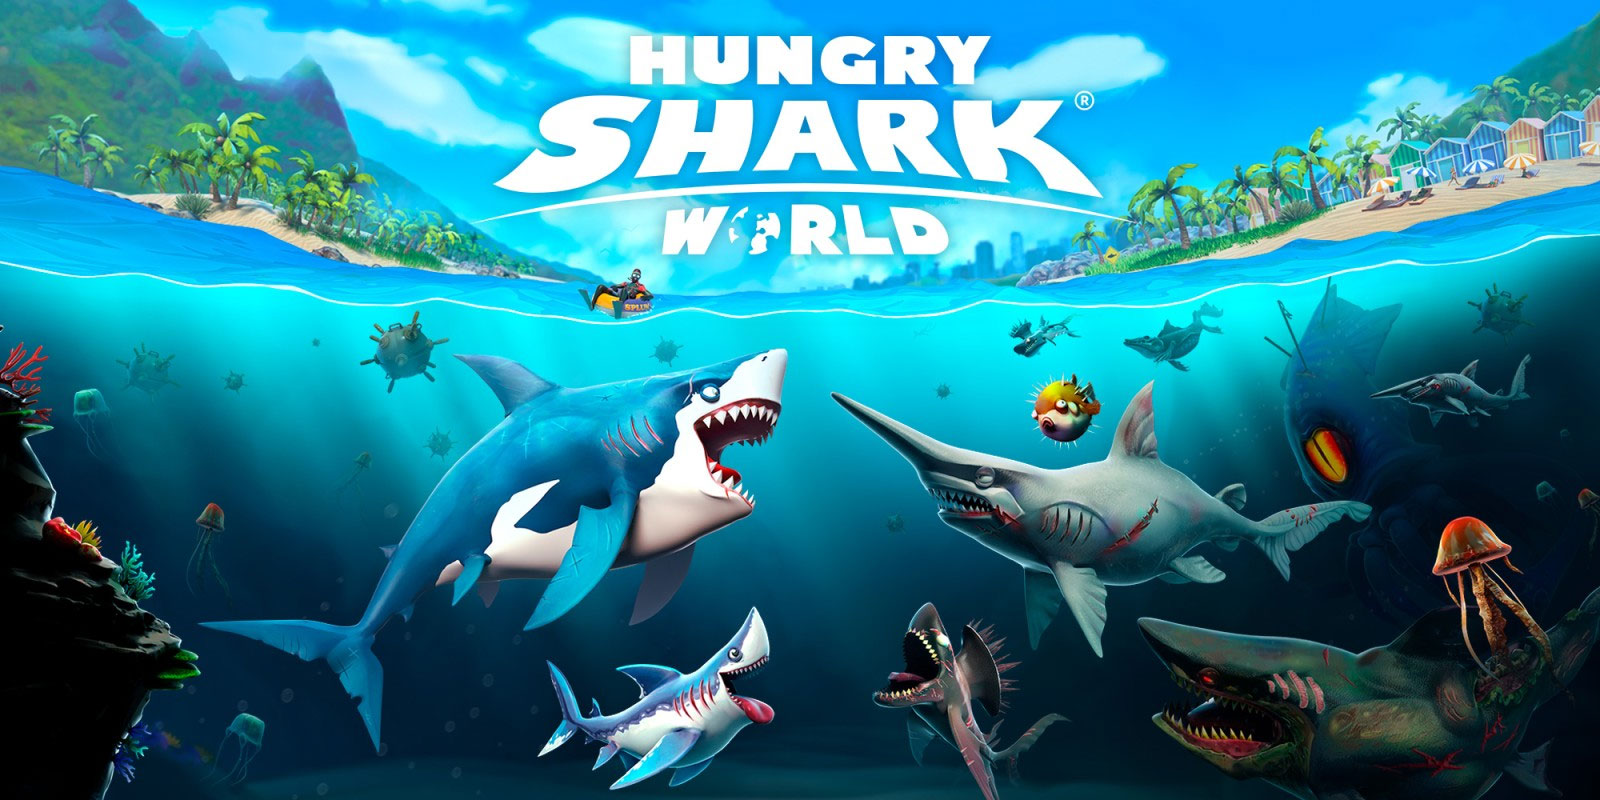 ملصق لعبة hungry shark